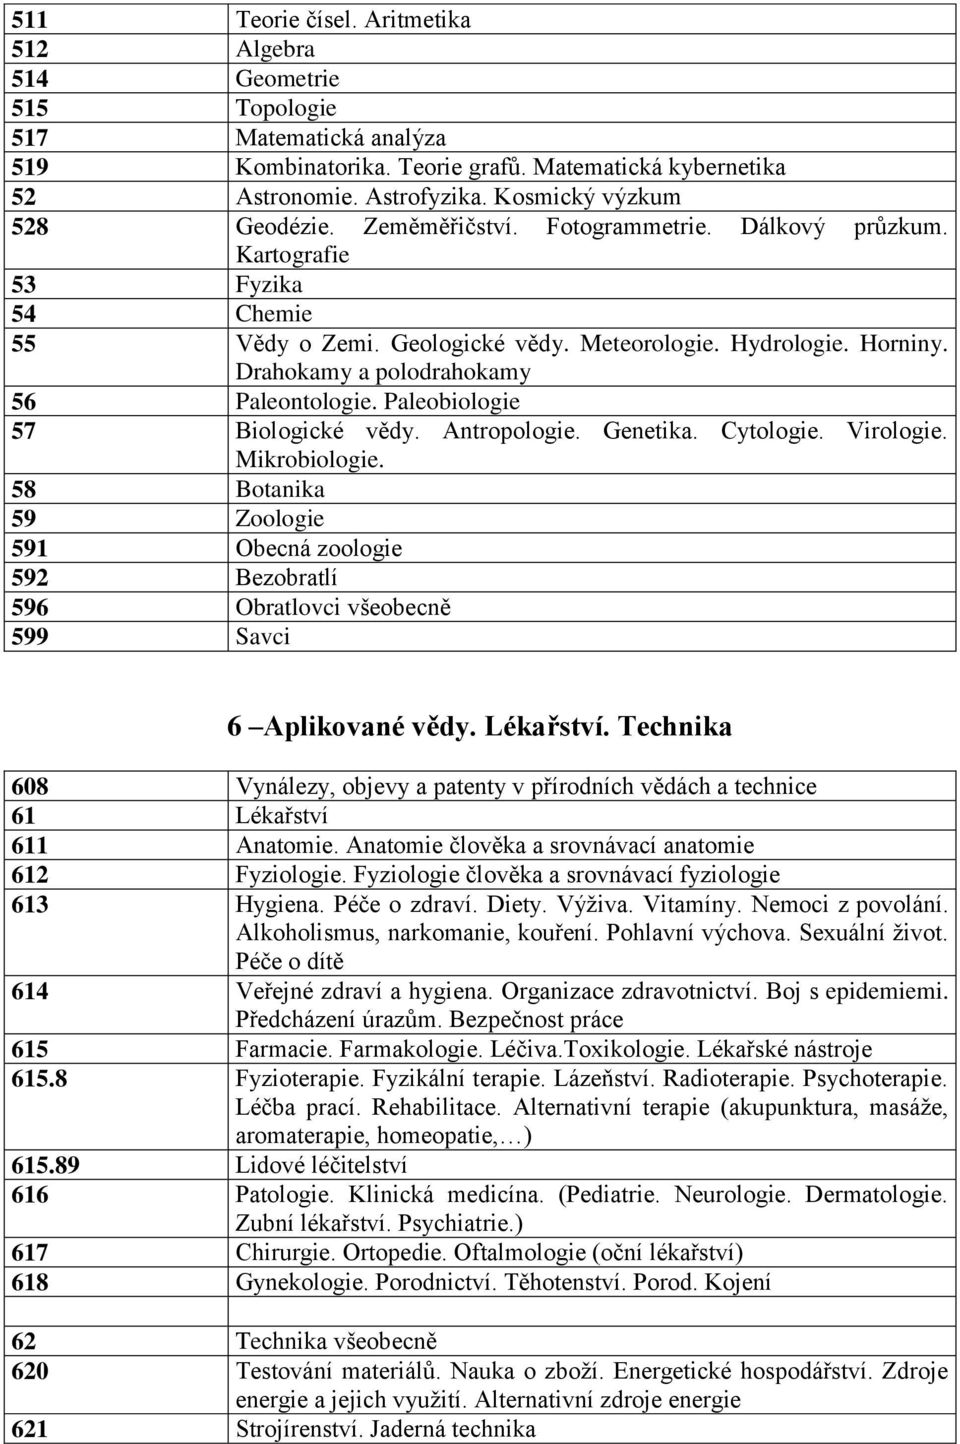 Drahokamy a polodrahokamy 56 Paleontologie. Paleobiologie 57 Biologické vědy. Antropologie. Genetika. Cytologie. Virologie. Mikrobiologie.